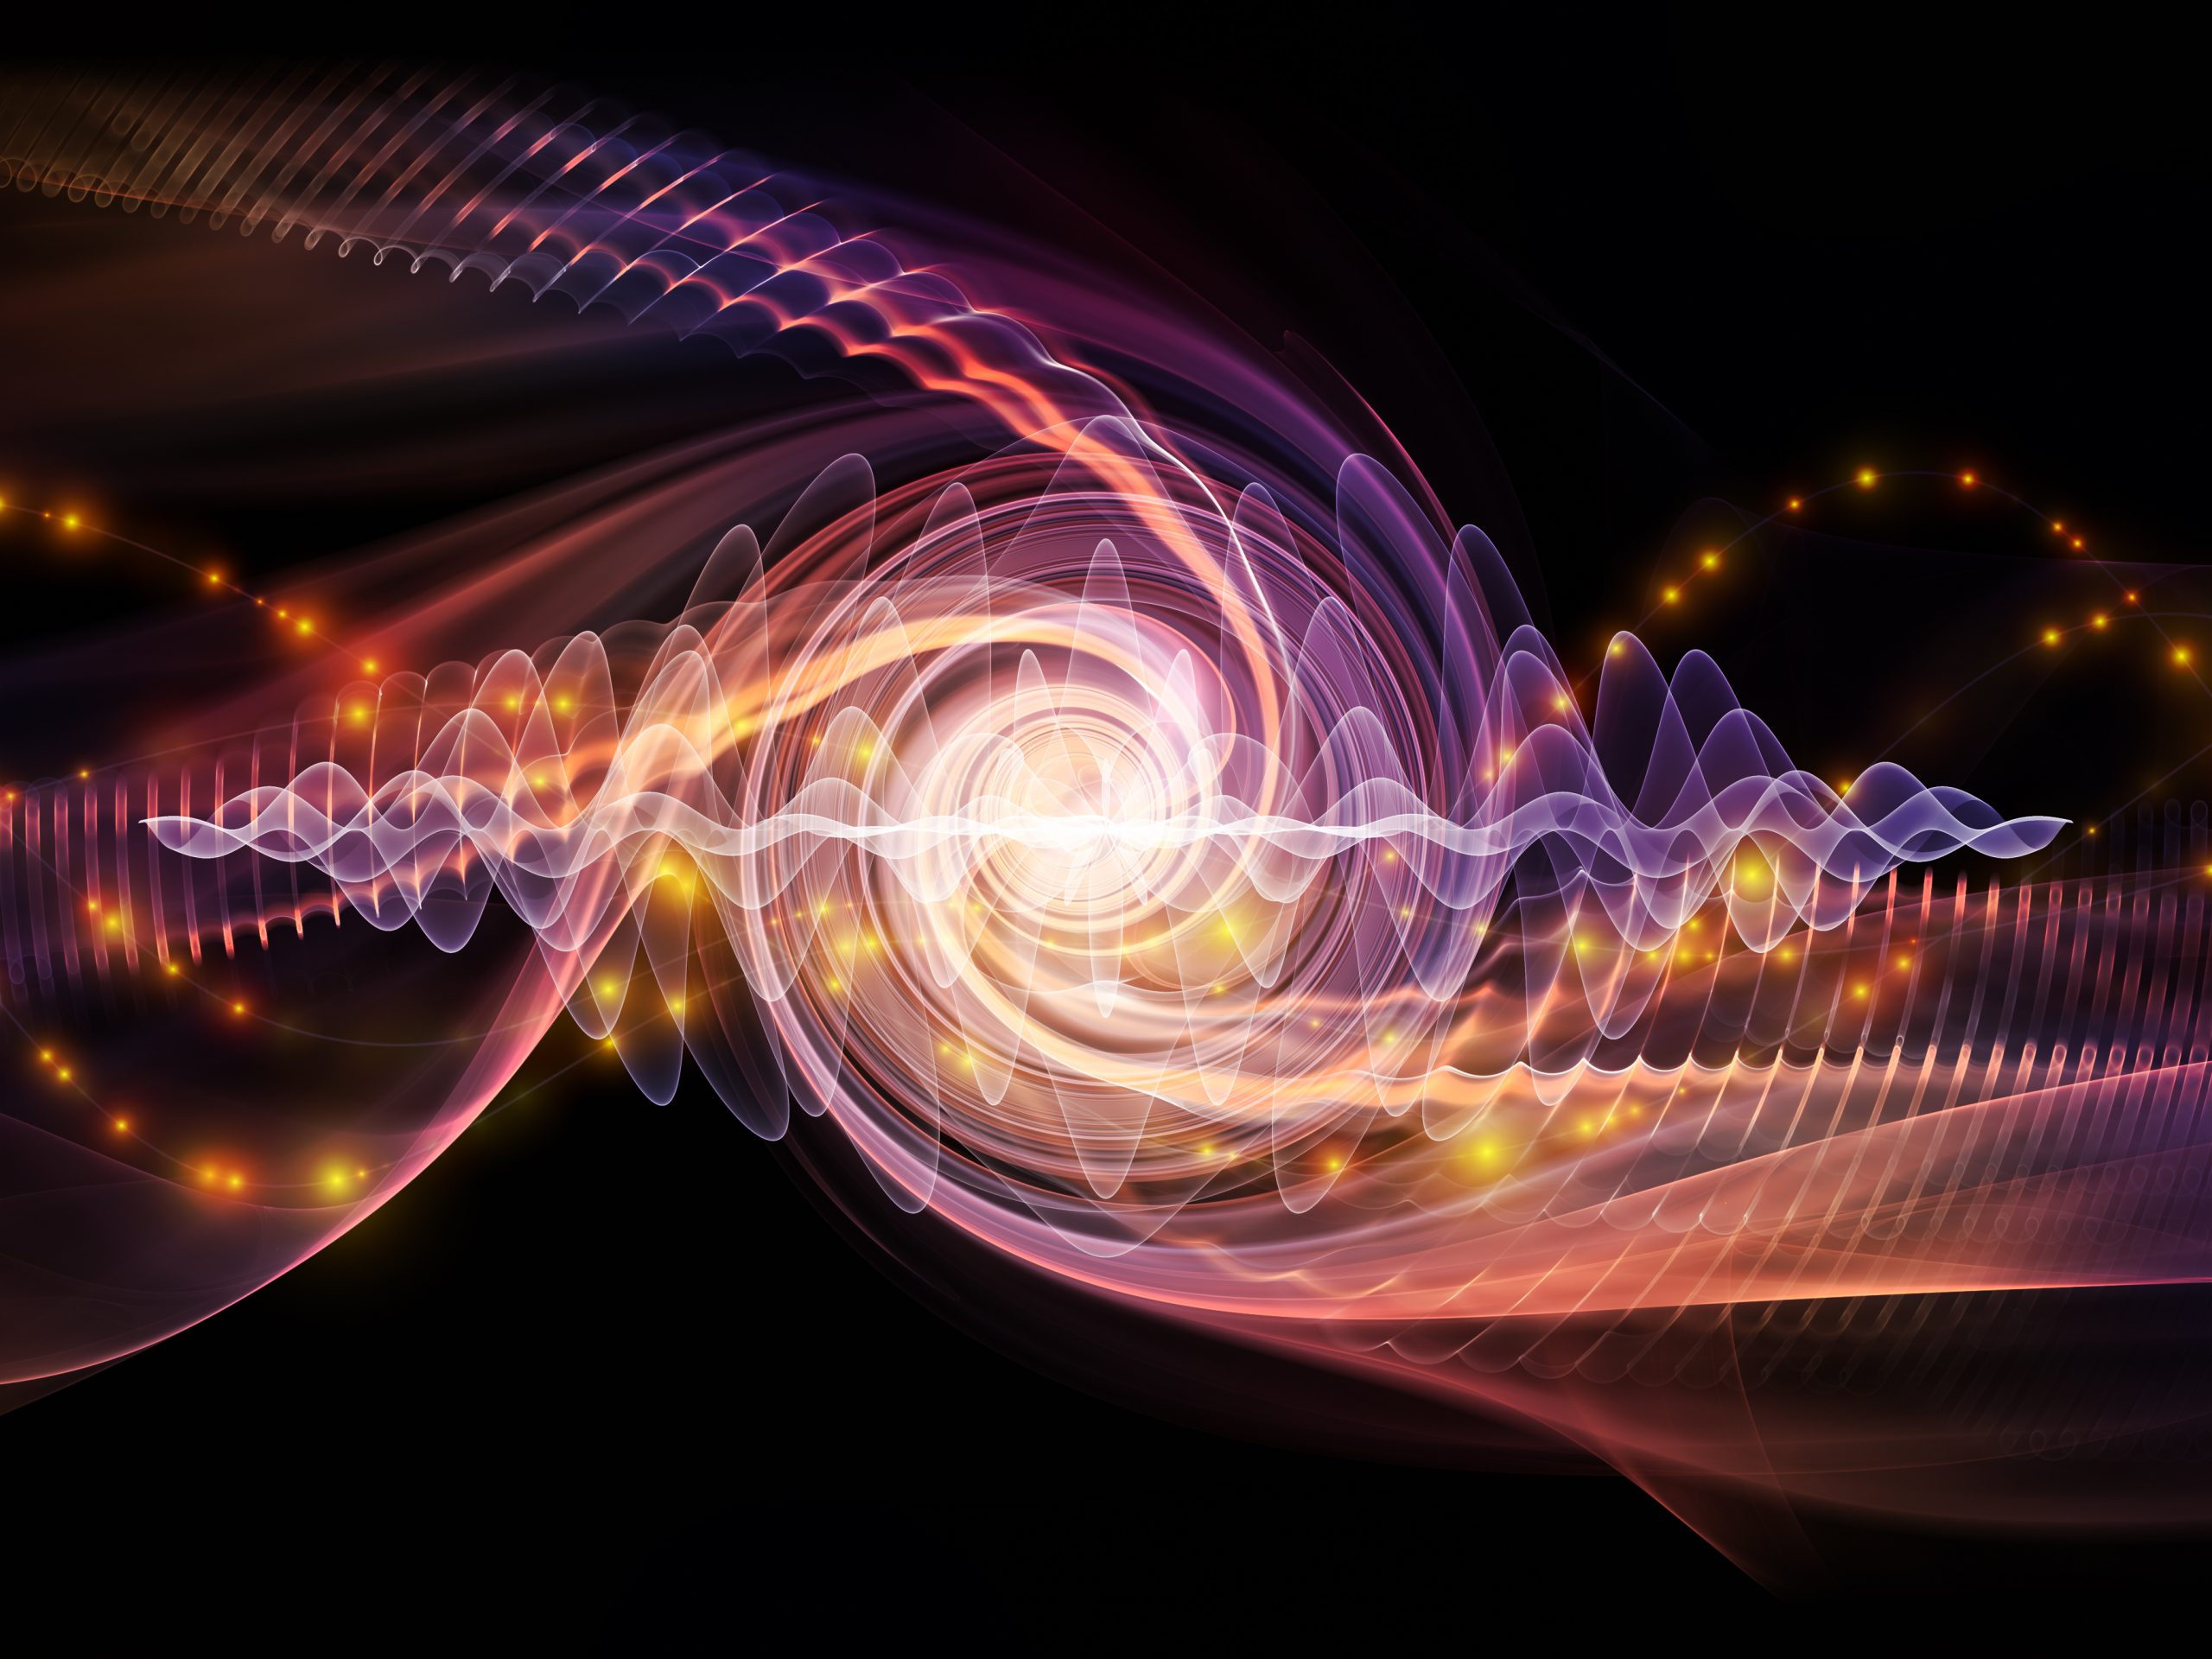 Τεχνολογία: Νέες διατάξεις qubit εκτινάσσουν τις δυνατότητες των κβαντικών υπολογιστών